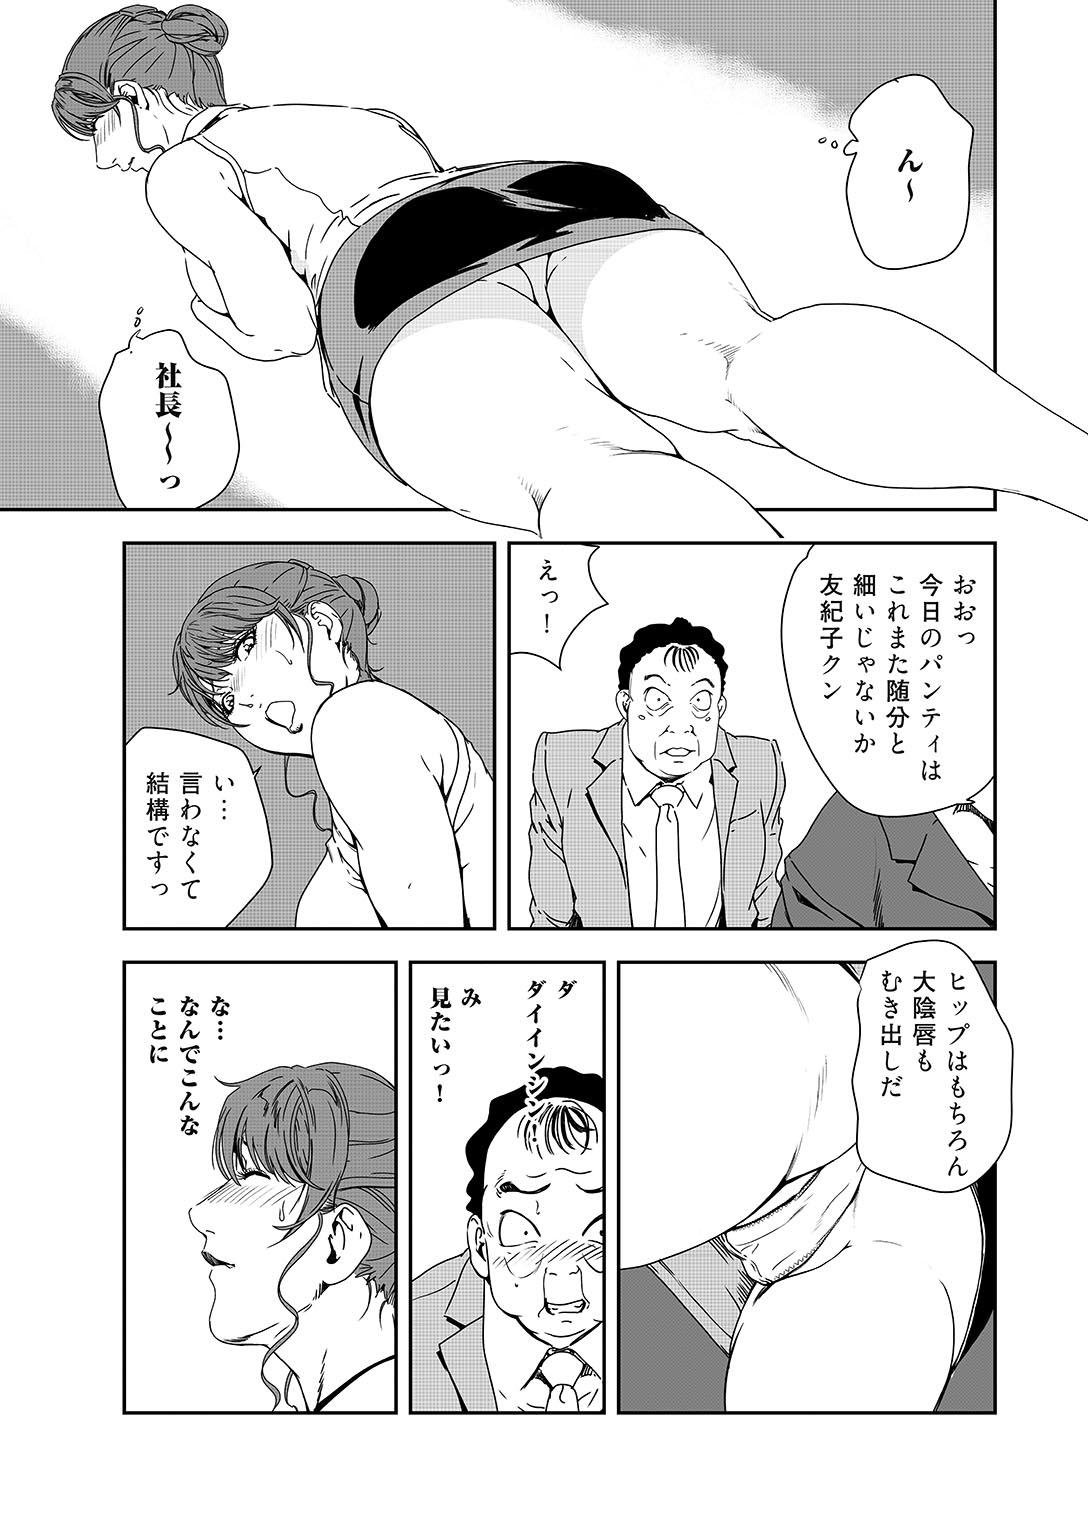 Bitch Nikuhisyo Yukiko 38 Chudai - Page 10